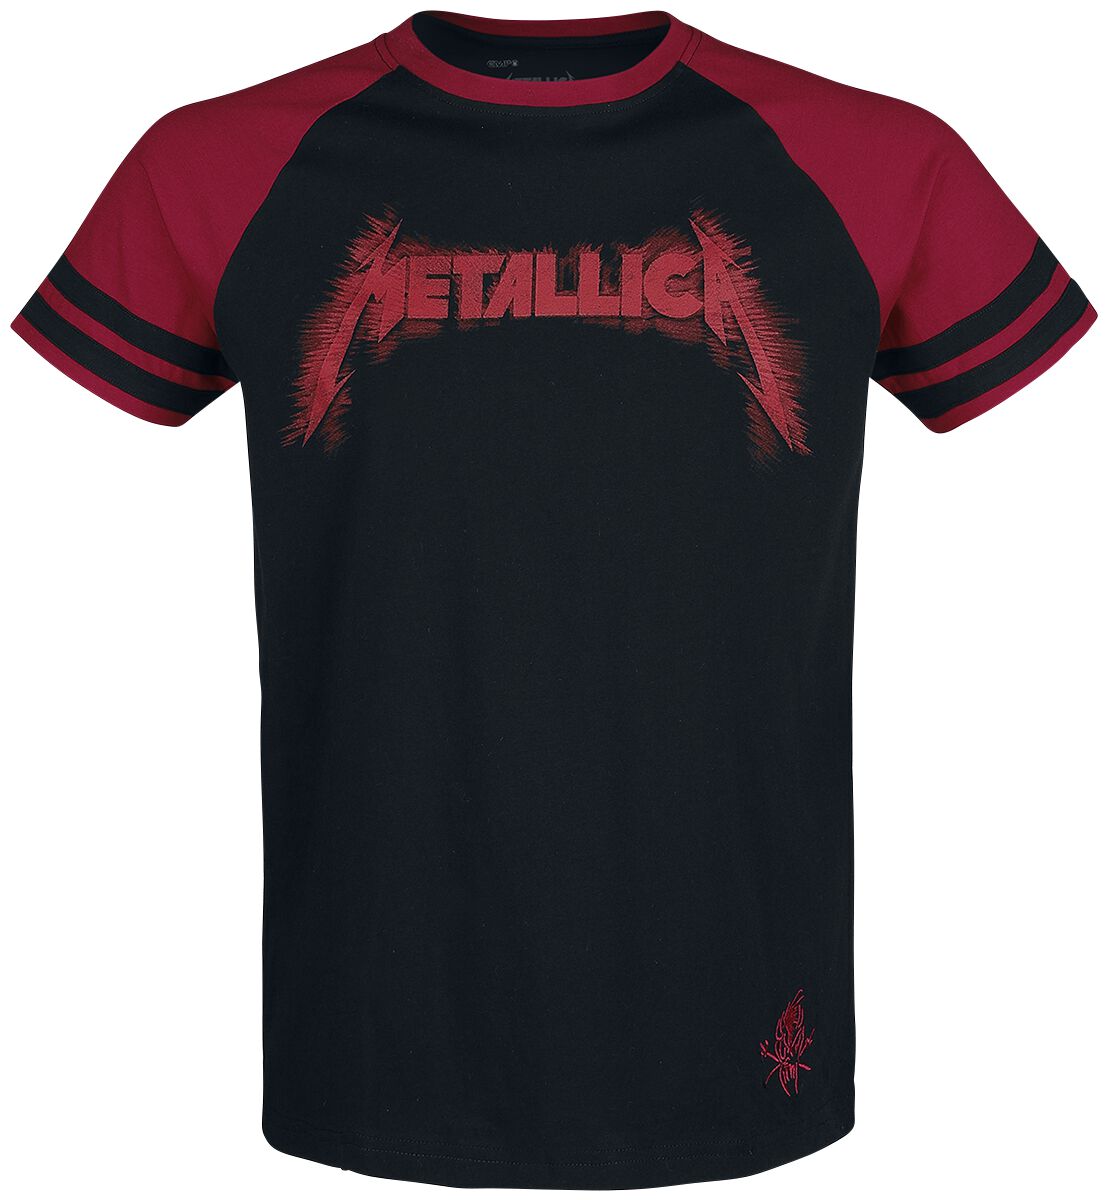 T-Shirt Manches courtes de Metallica - EMP Signature Collection - S à 5XL - pour Homme - noir/rouge